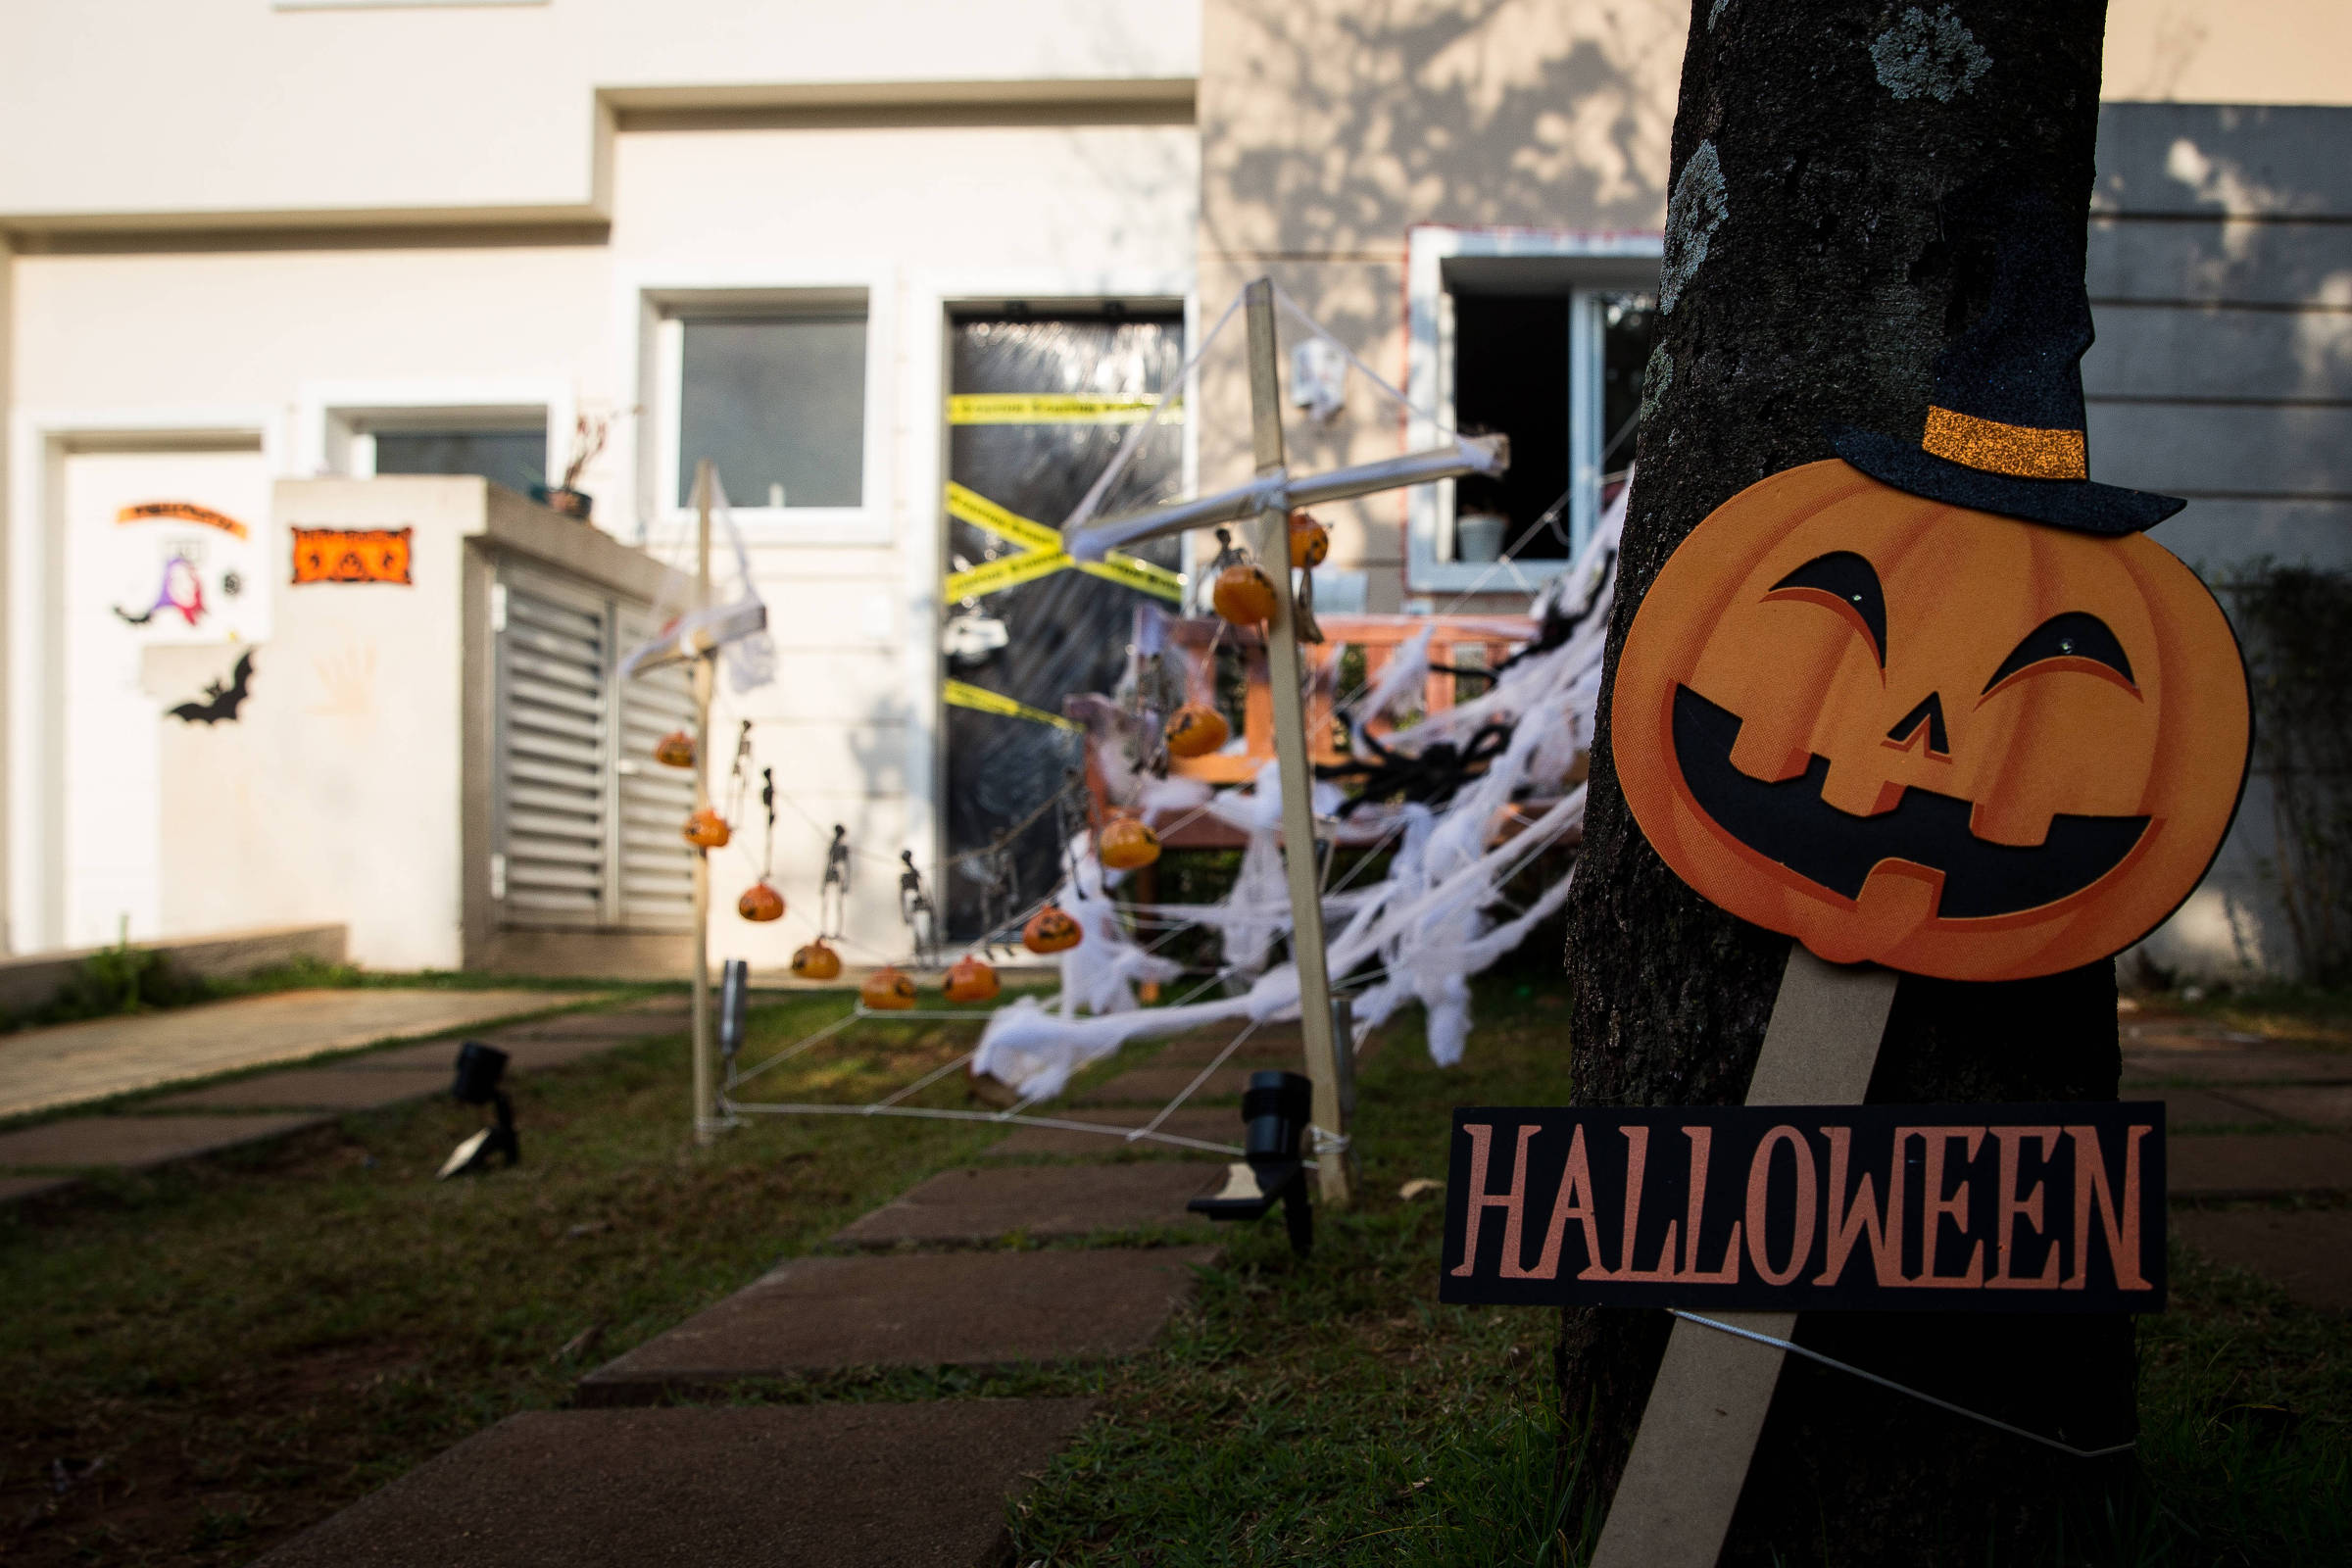 E se o Halloween fosse uma tradição brasileira? - Nacional - Estado de Minas